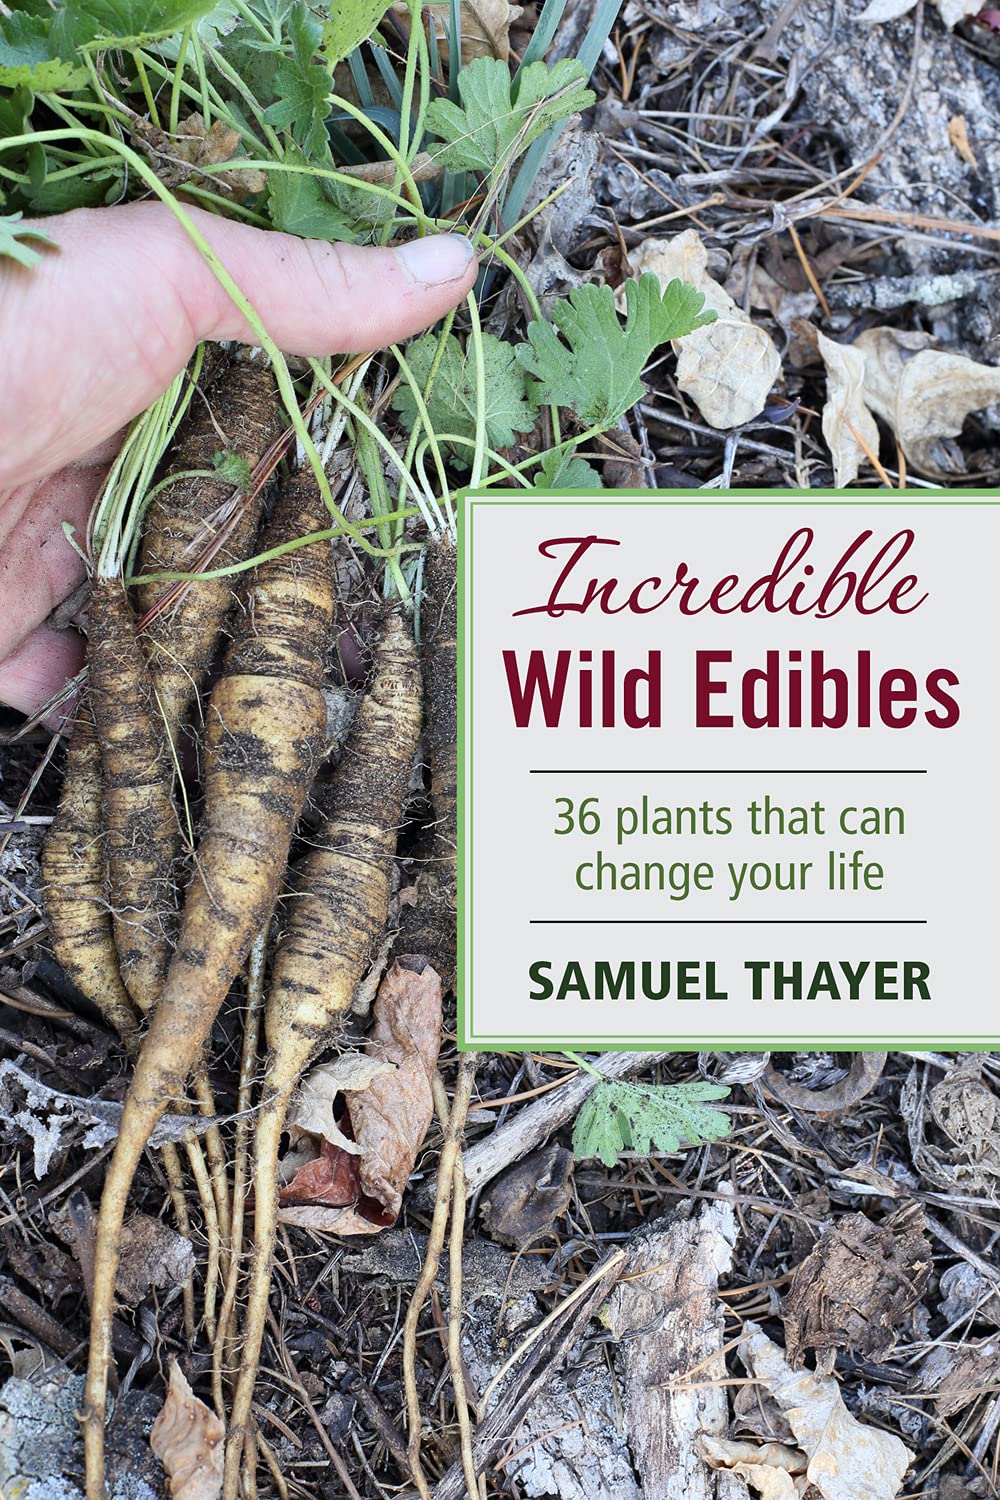 Incredible Wild Edibles [Samuel Thayer]